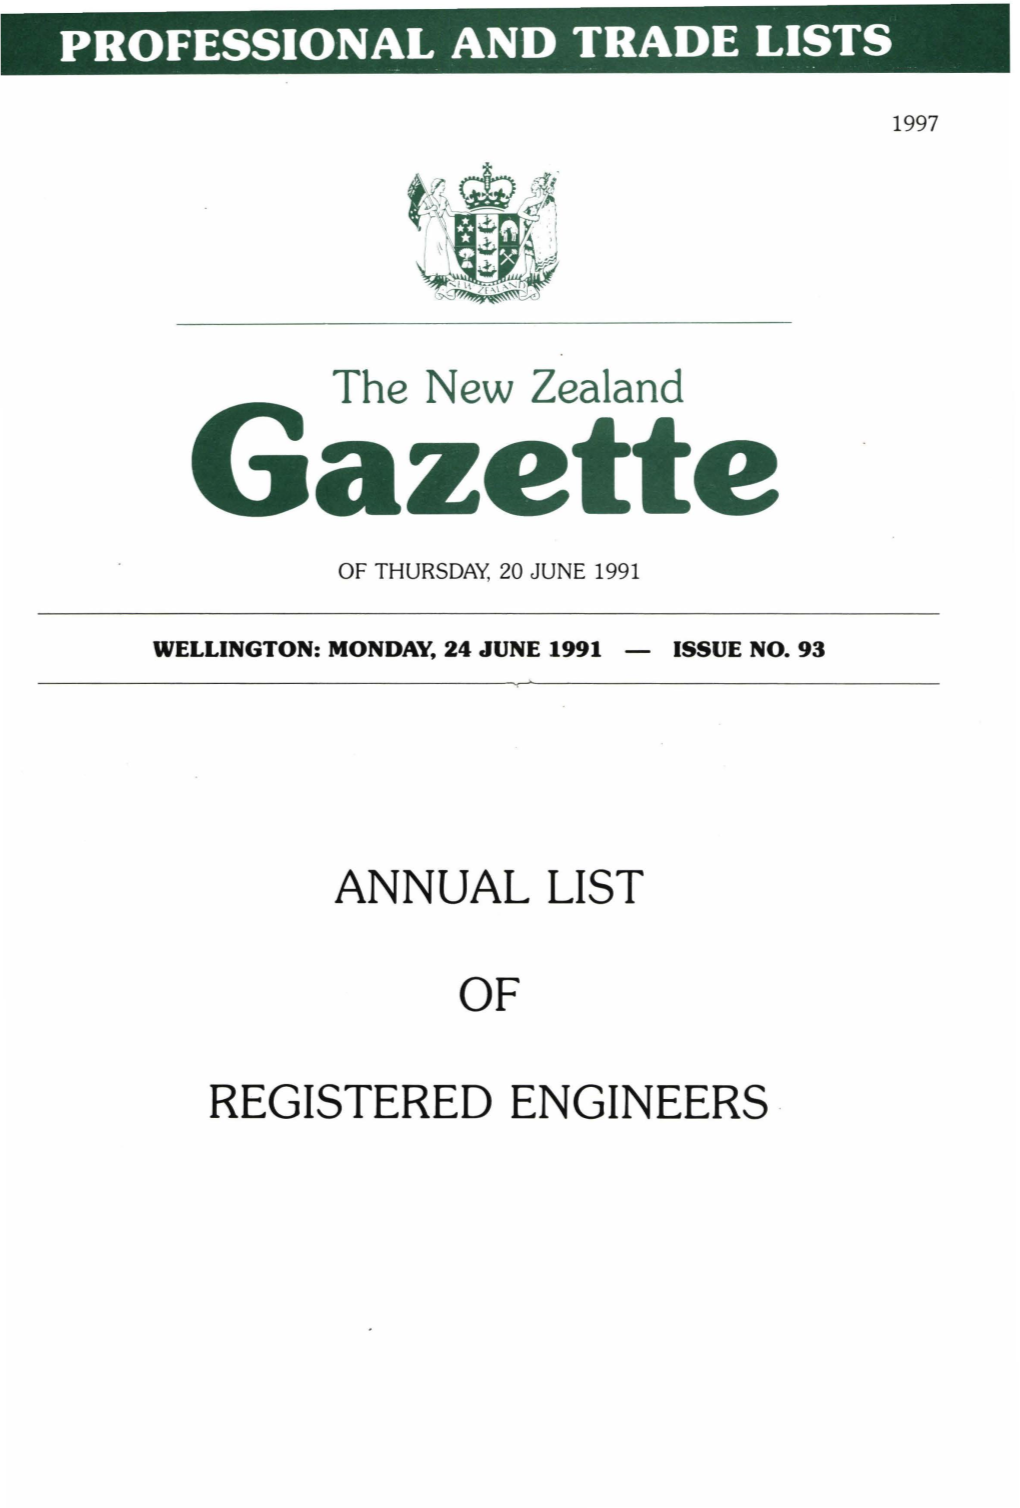 Annual List Registered Engineers